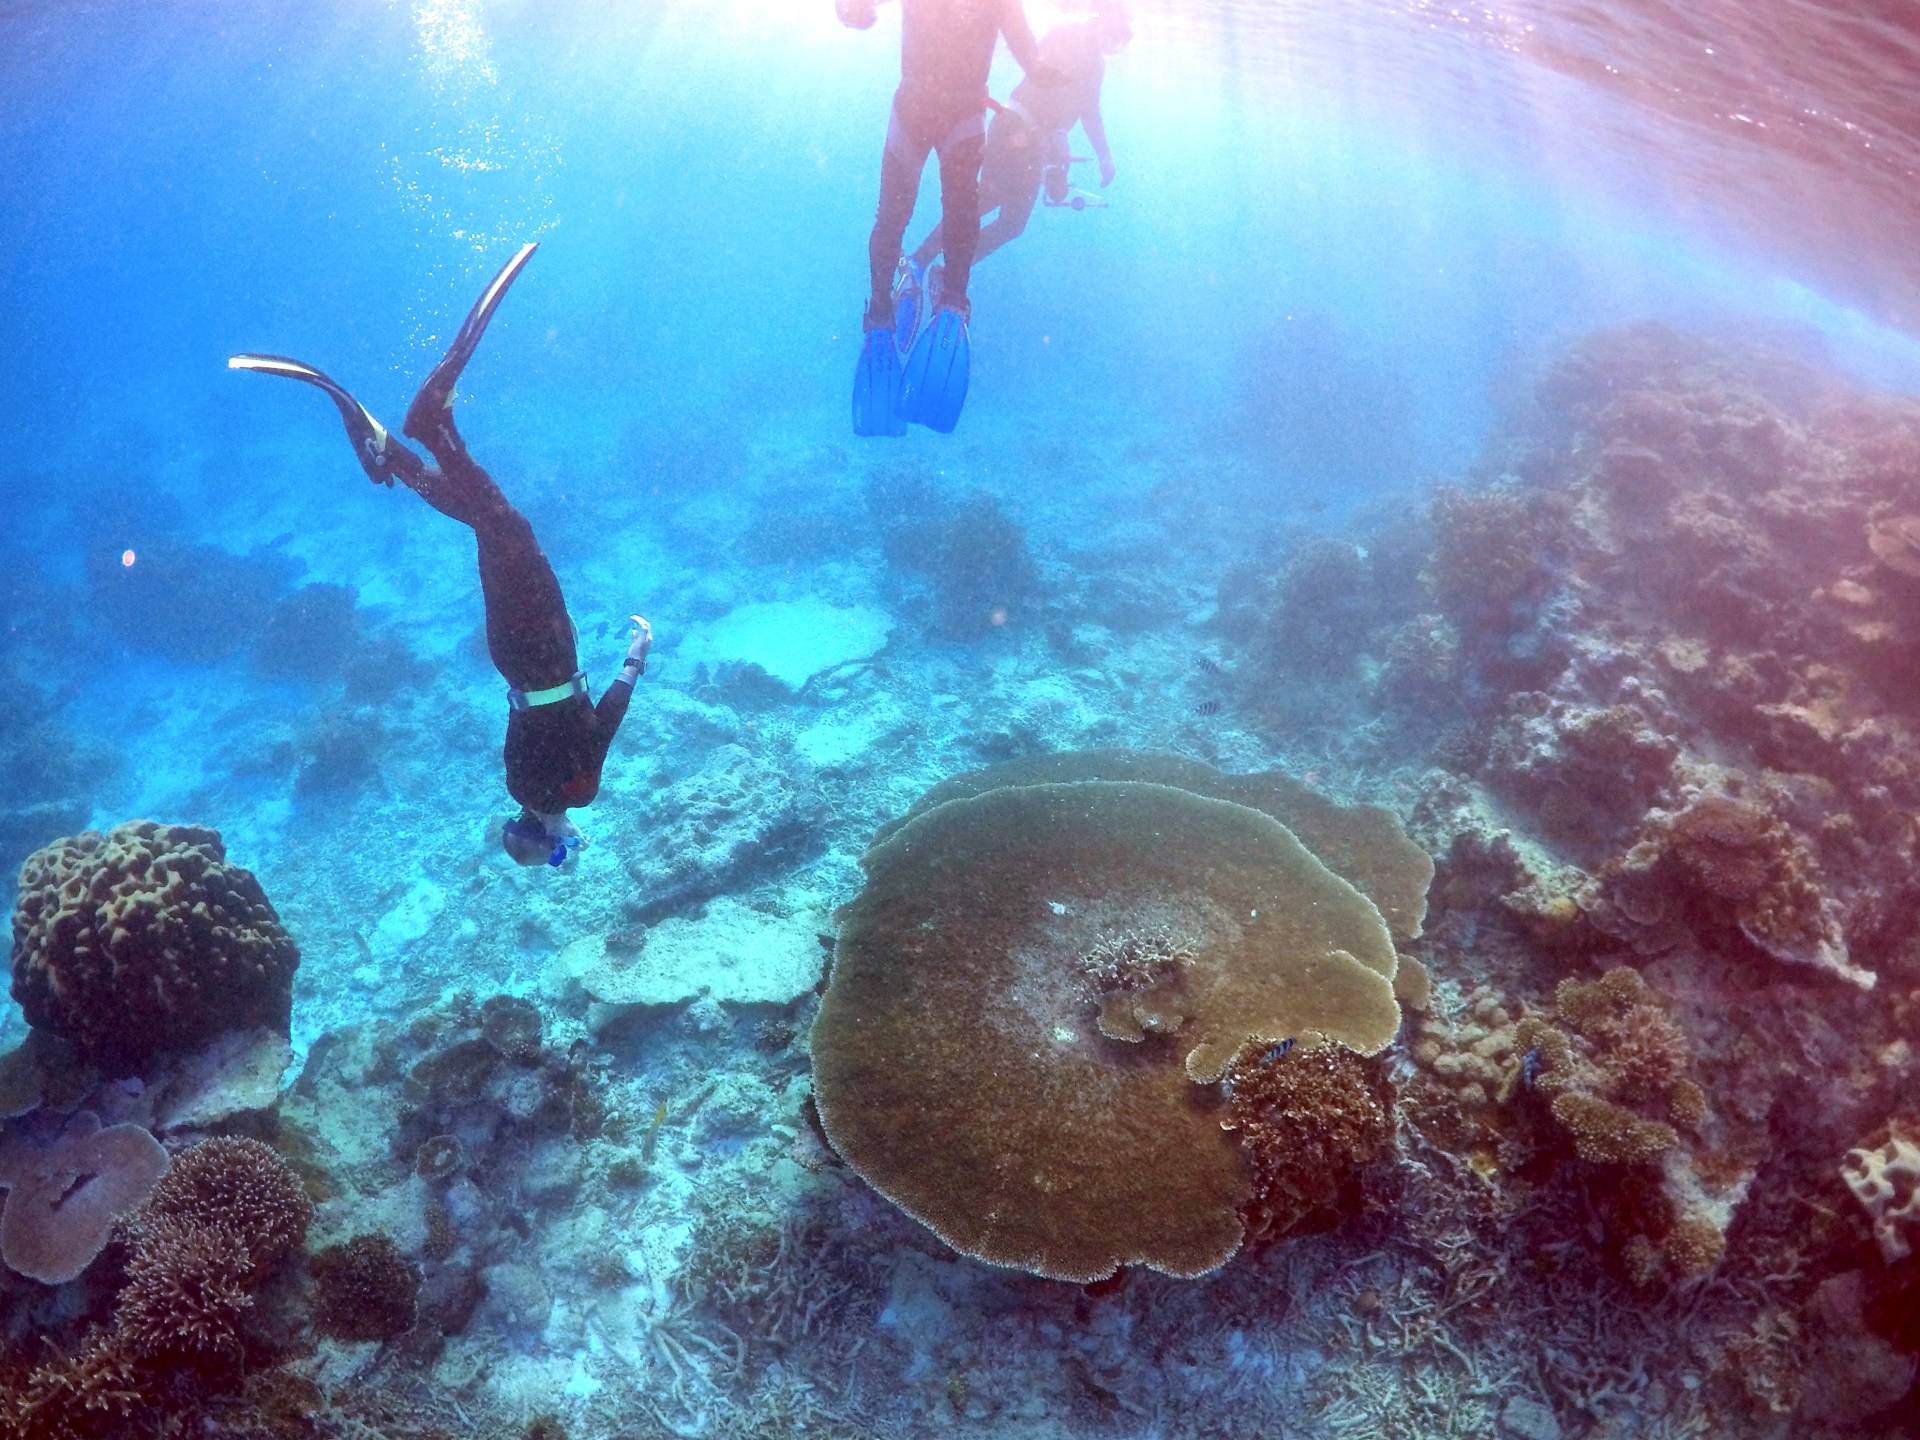 Australia’s Great Barrier Reef should be on ‘in danger’ list: UN